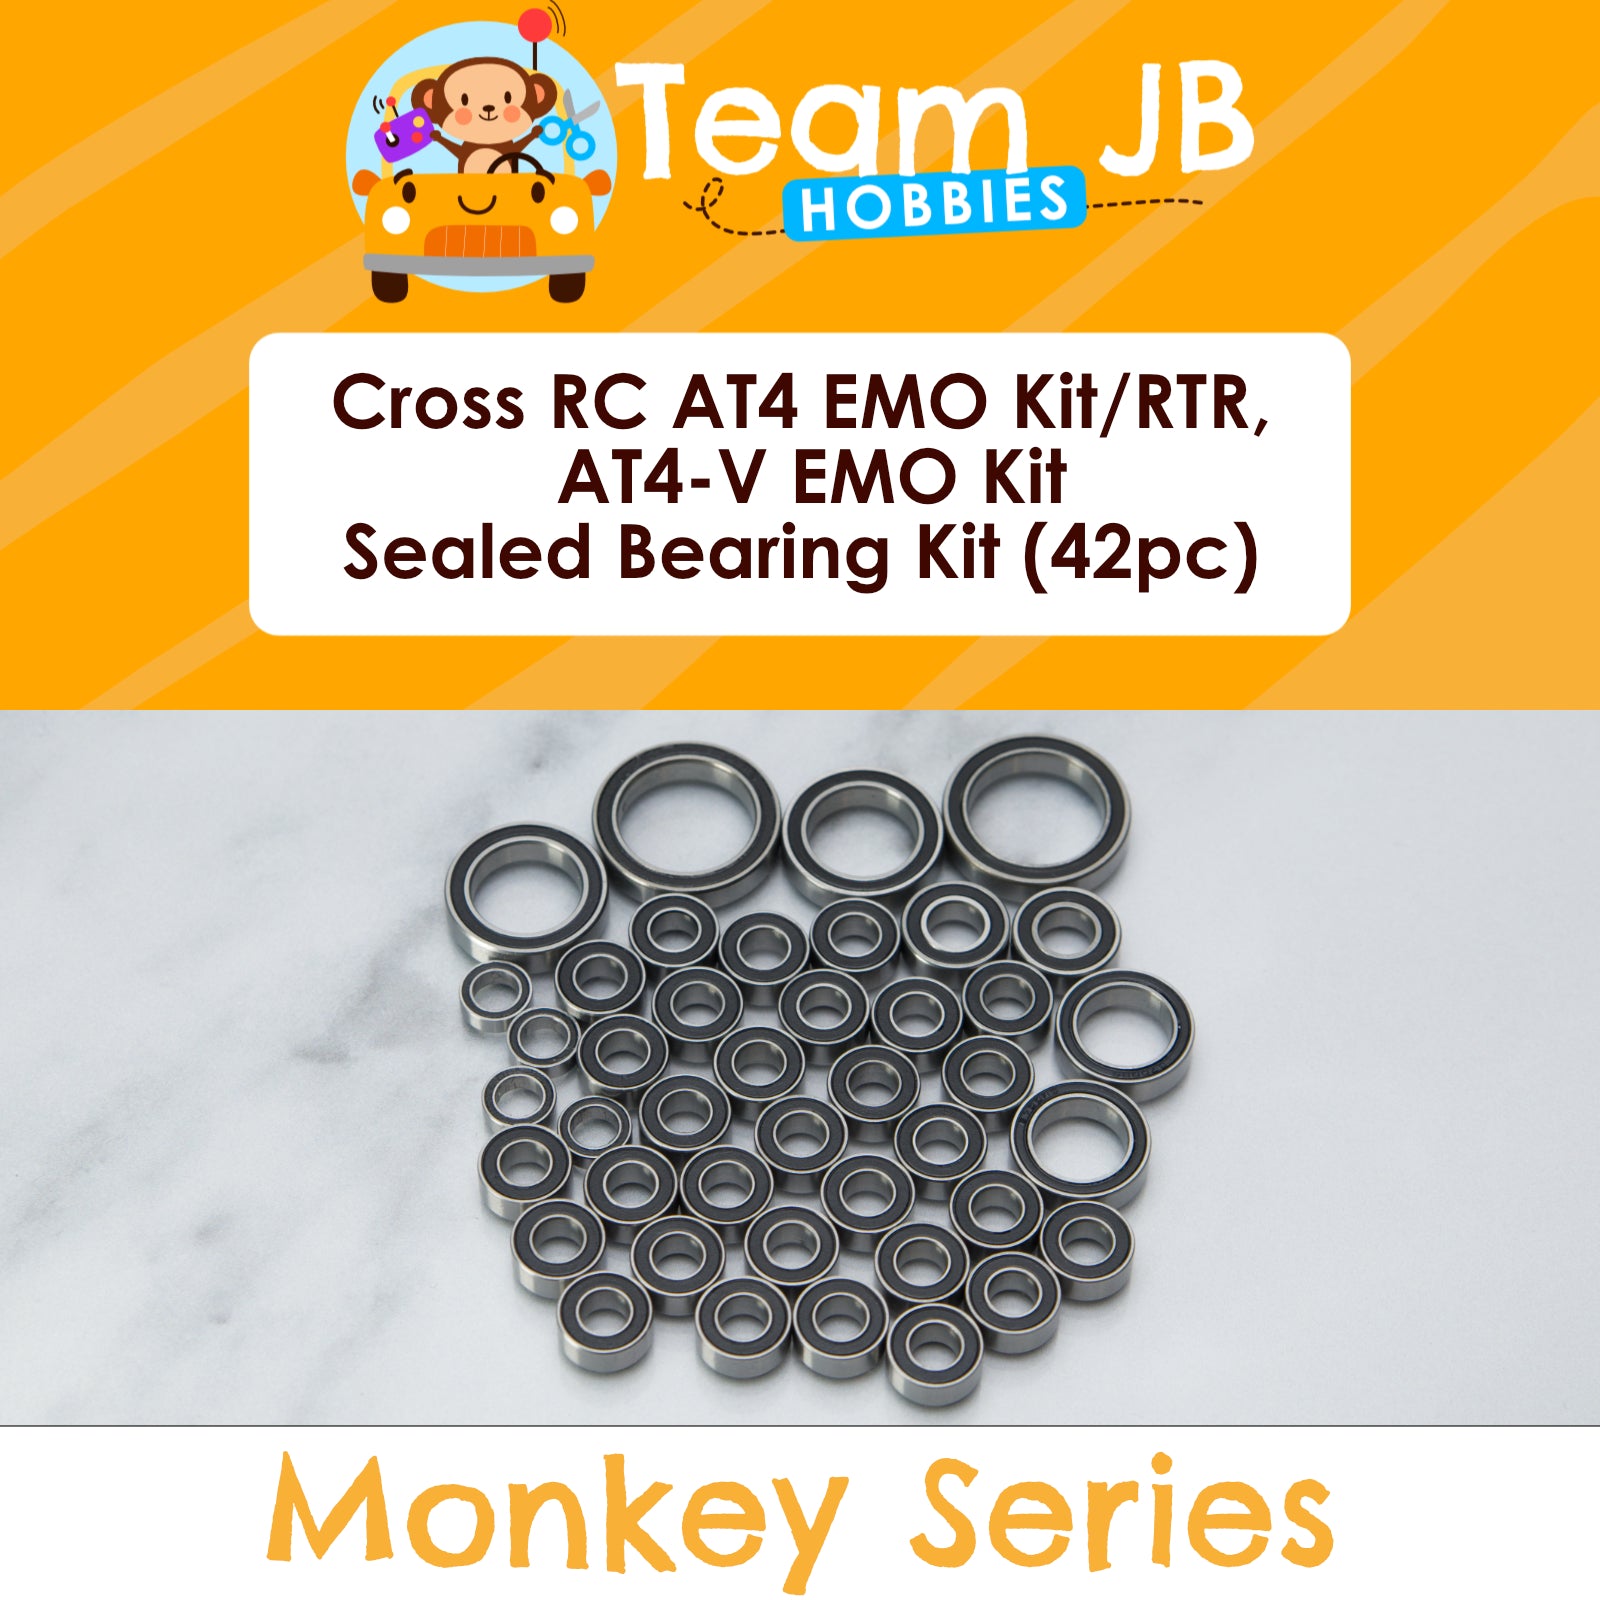 Cross RC AT4 EMO Kit, AT4 EMO RTR, AT4-V EMO Kit - Sealed Bearing Kit